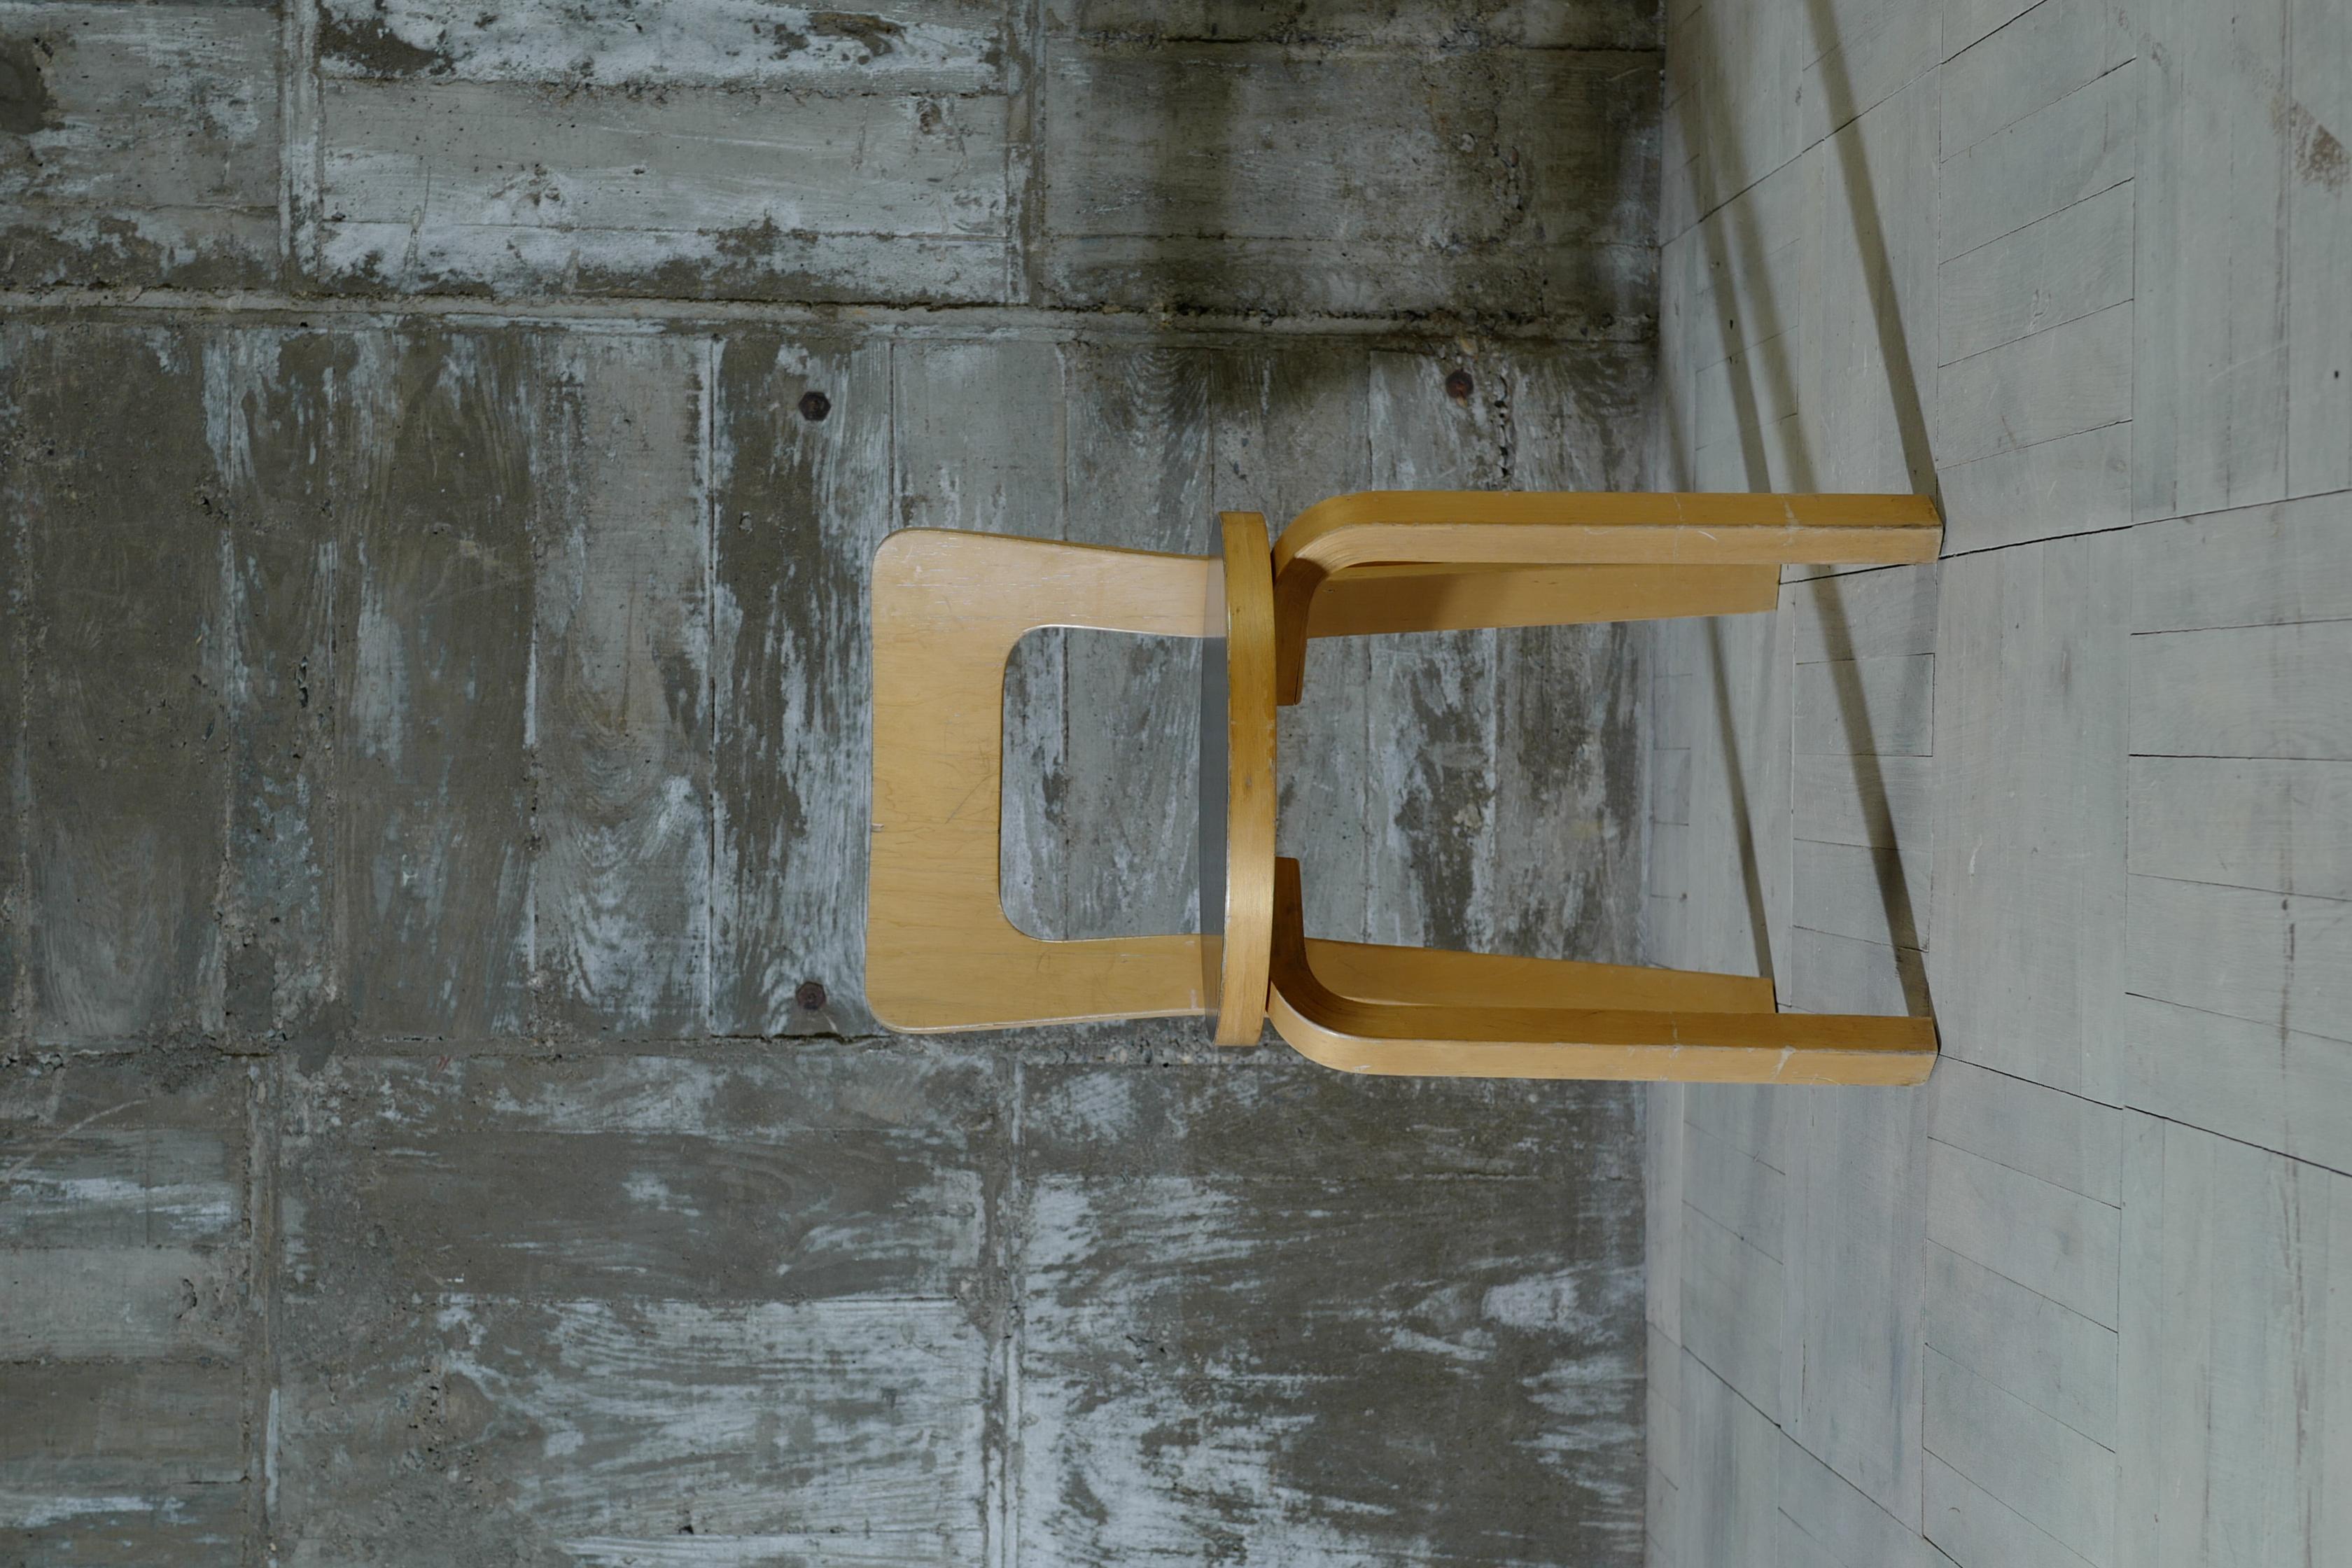 Entworfen von Alvar Aalto.
Dies ist Stuhl 65 schwarz Linoleum oben.